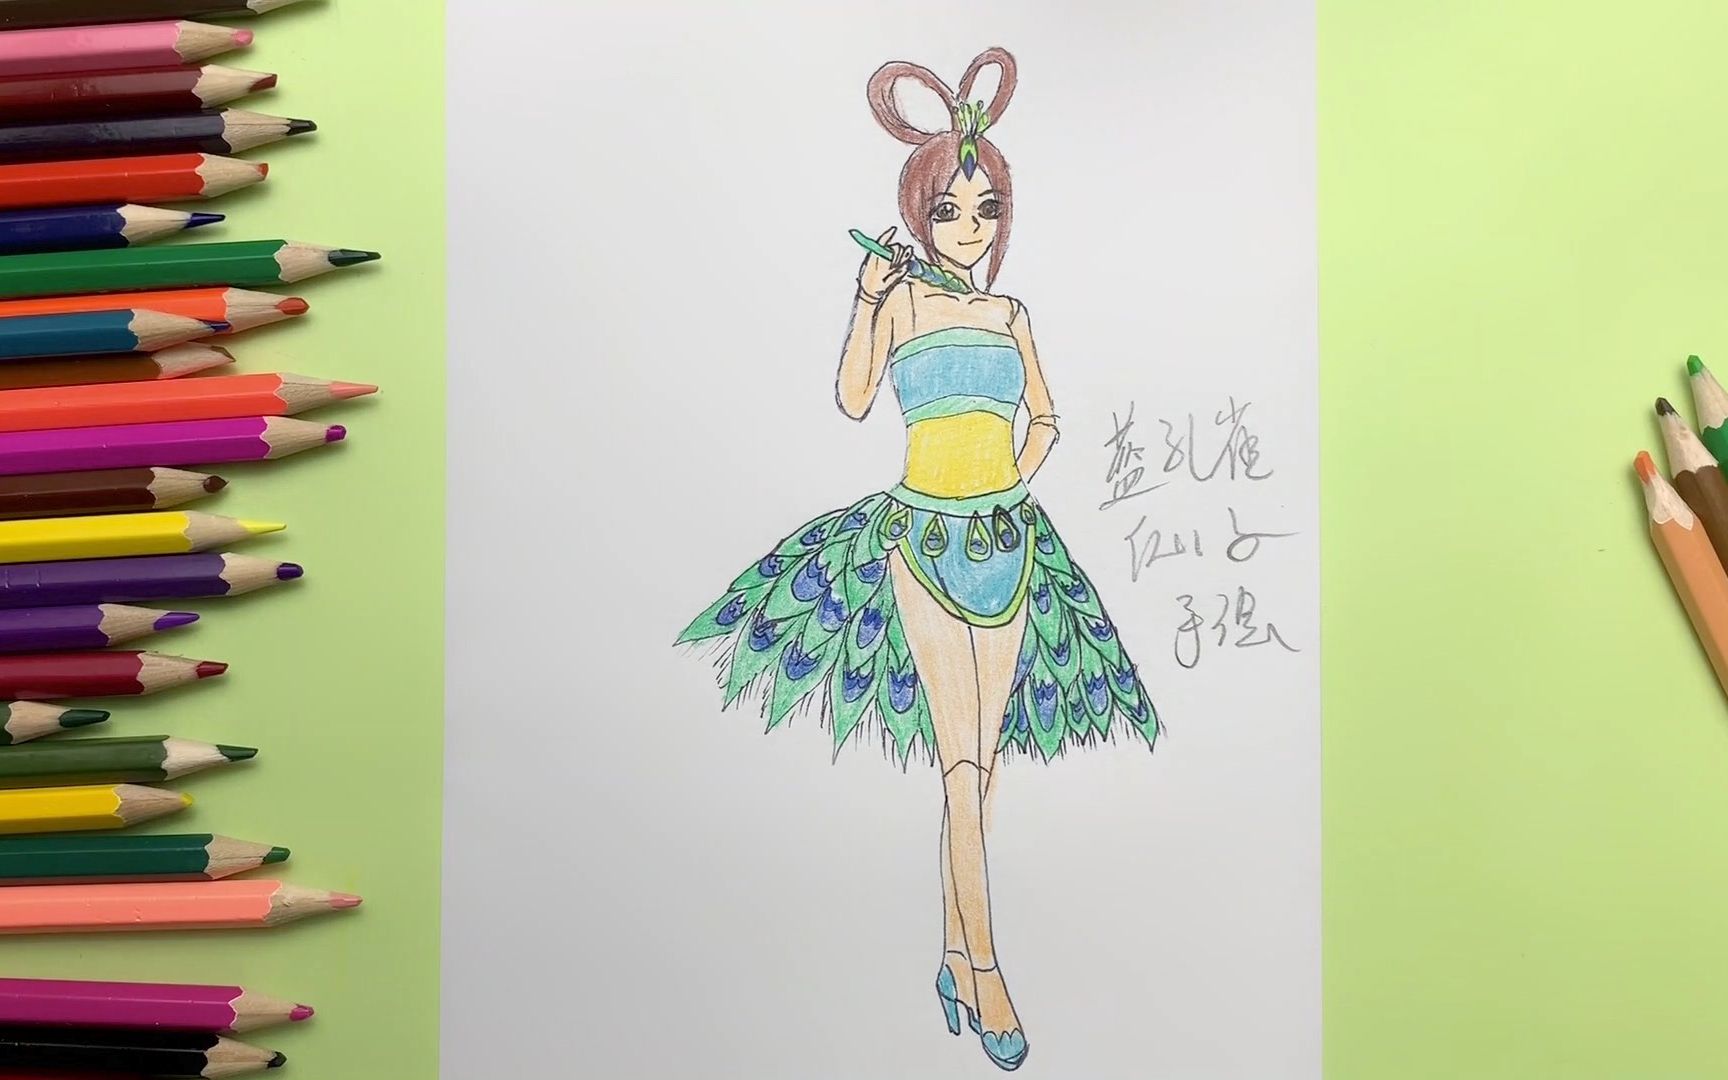 二次元手绘教程:画少女装扮的叶罗丽蓝孔雀仙子,你喜欢吗?